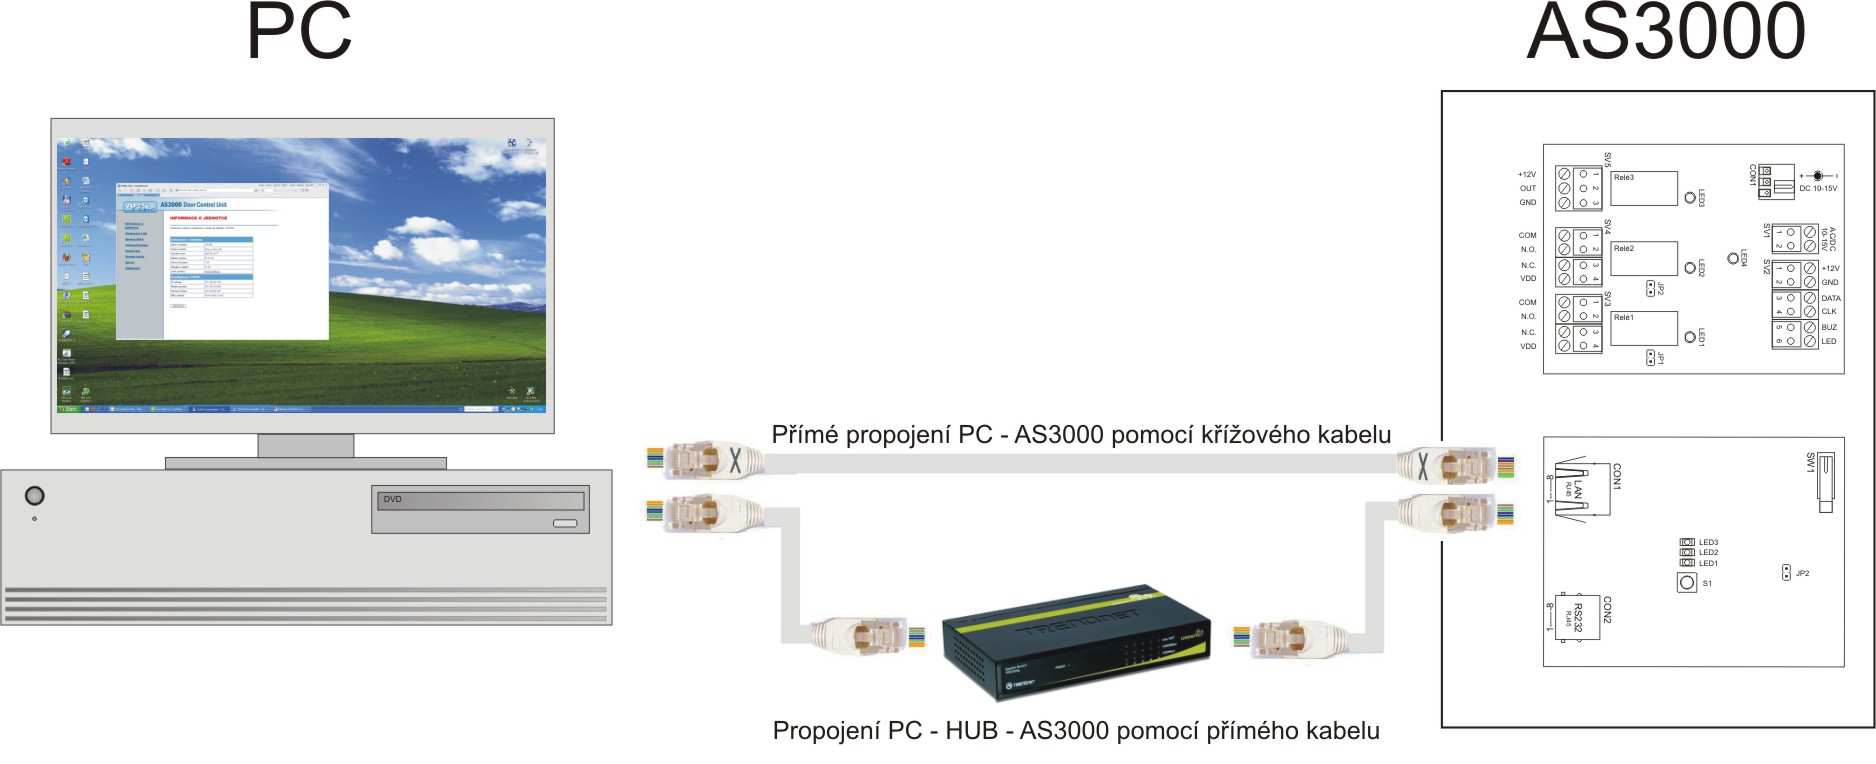 V případě přímého propojení jednotky AS3000 s počítačem, použijte křížený kabel (součástí dodávky). Správné připojení je signalizováno zelenou LED na konektoru CON1.